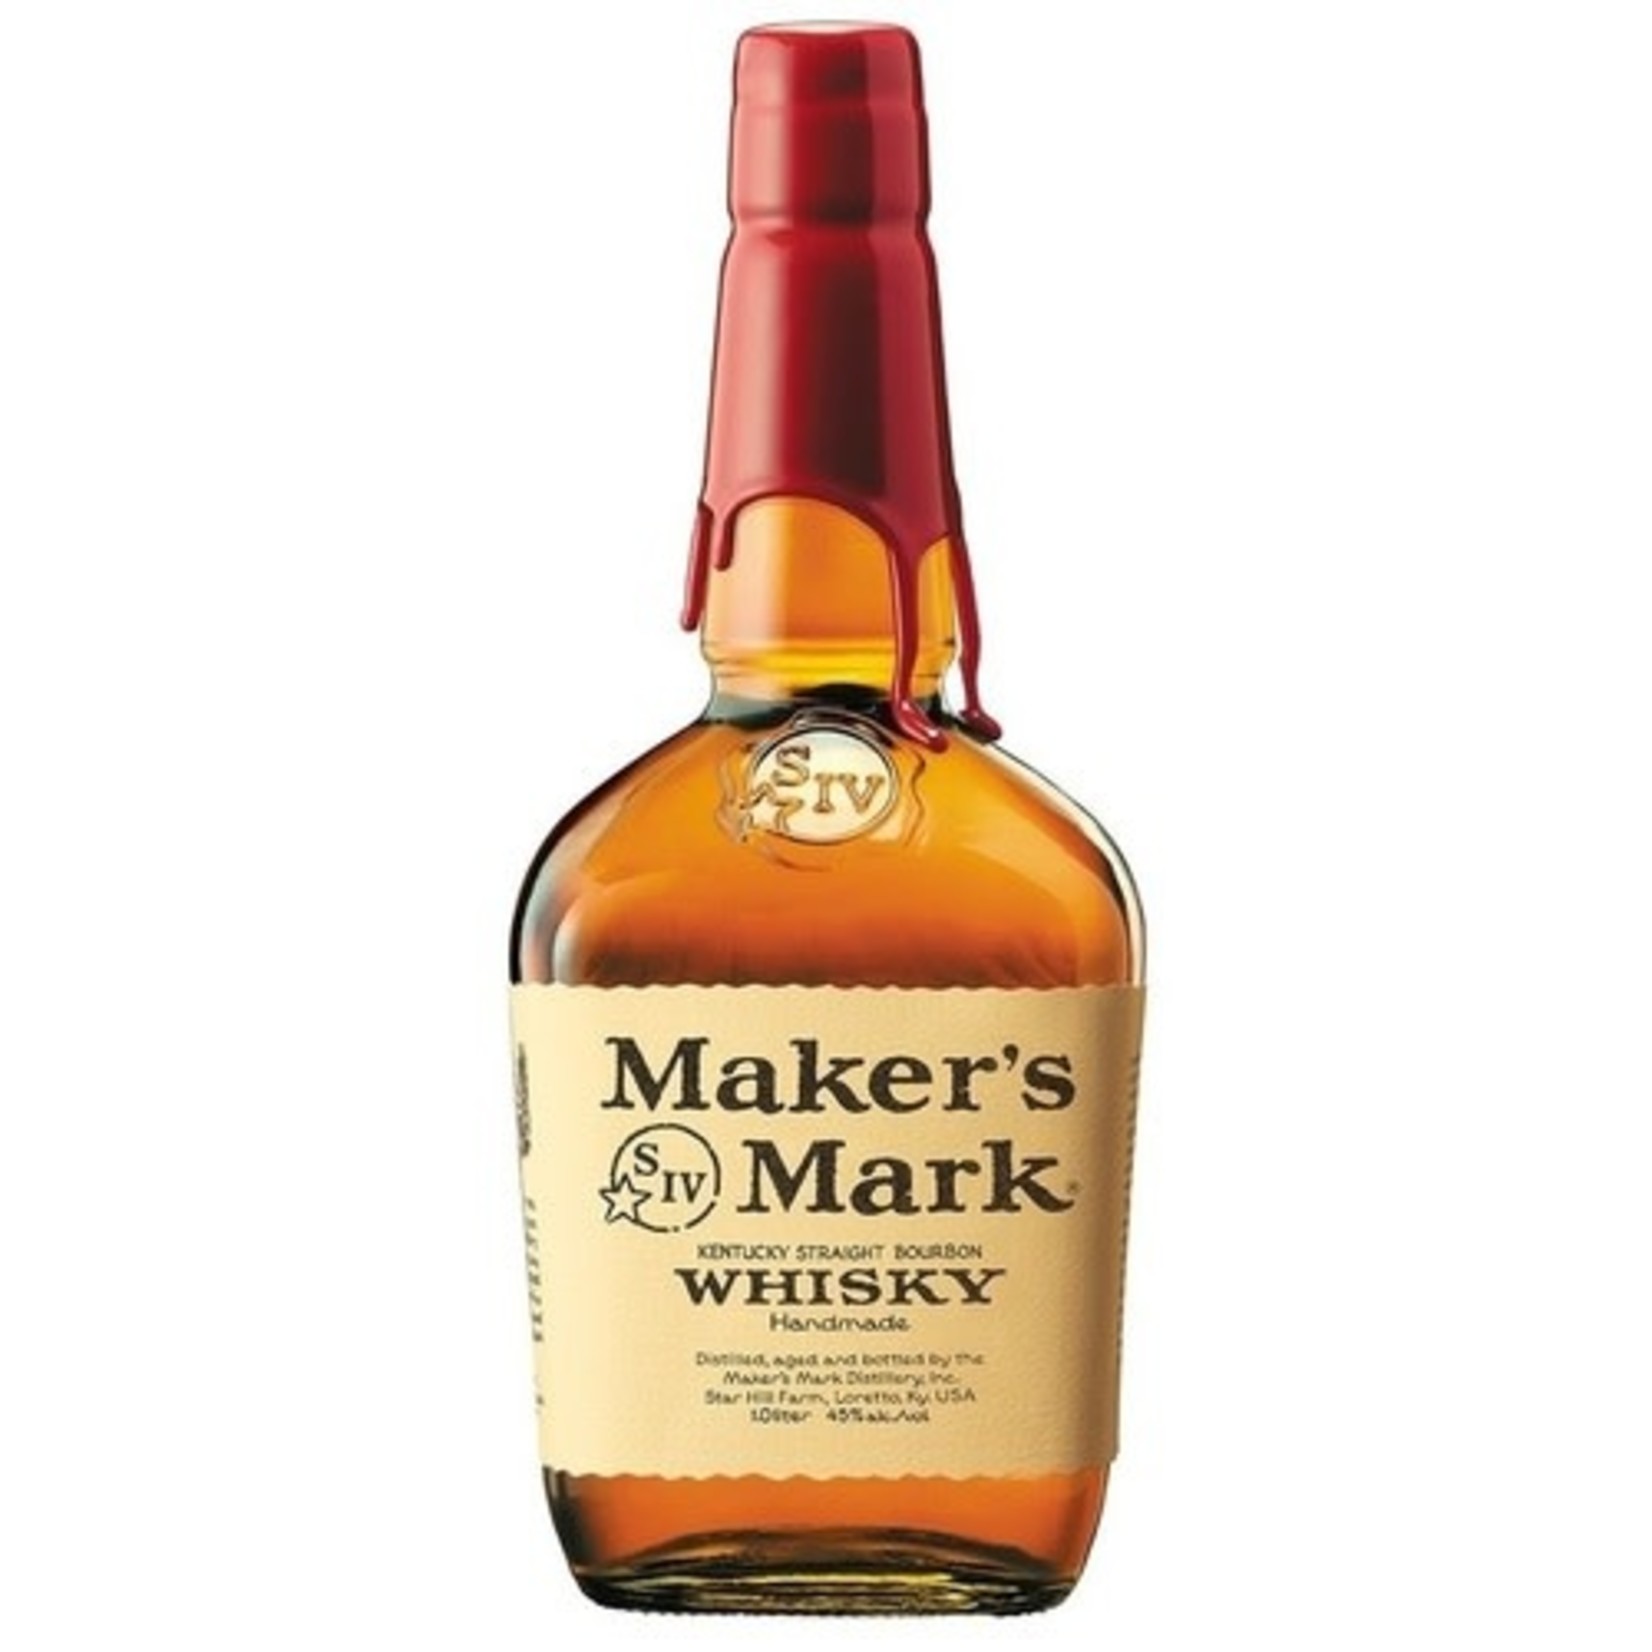 Makers Mark Makers Mark Bourbon Whisky